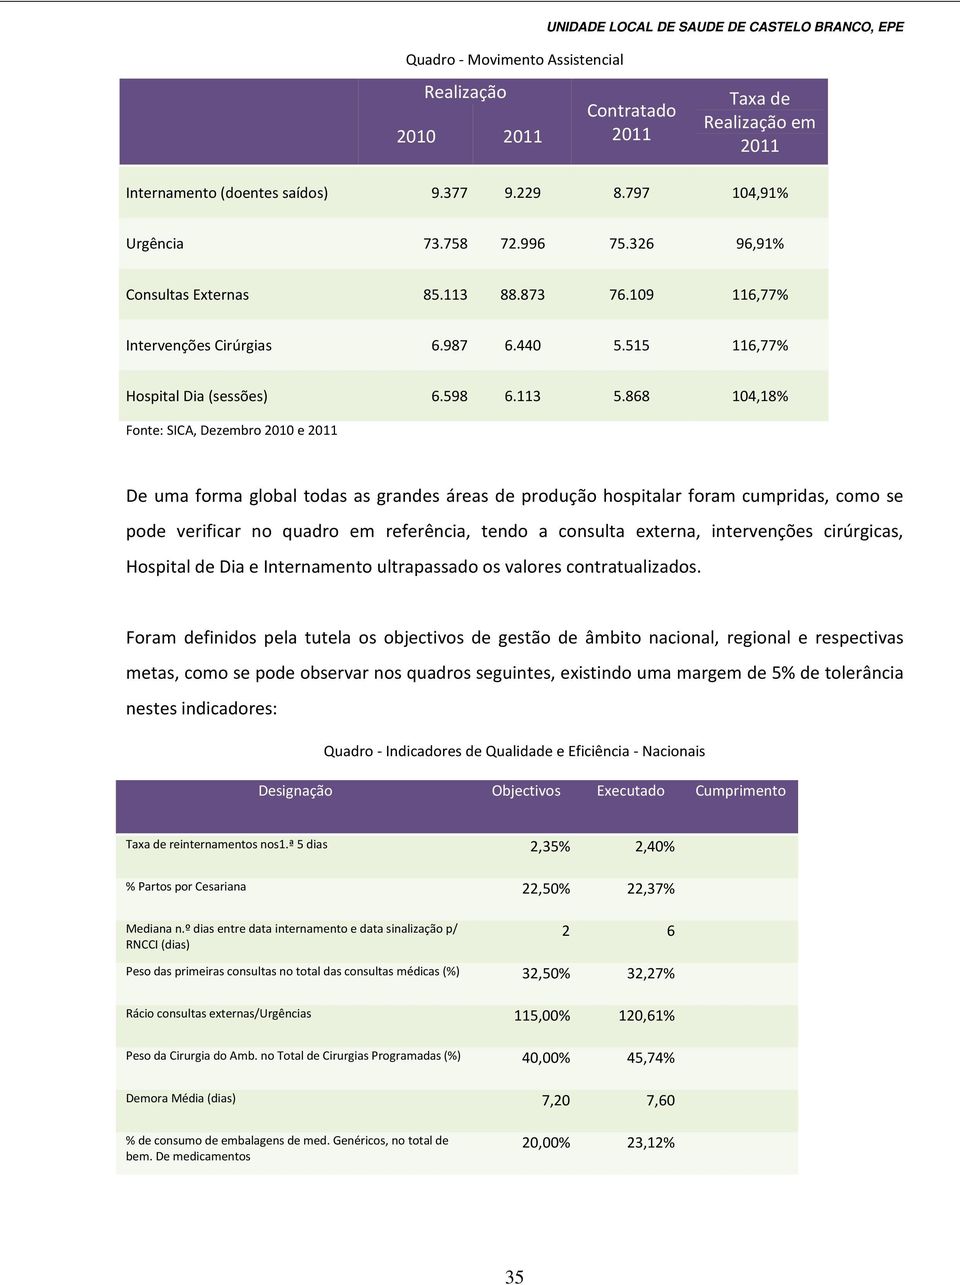 868 104,18% Fonte: SICA, Dezembro 2010 e 2011 De uma forma global todas as grandes áreas de produção hospitalar foram cumpridas, como se pode verificar no quadro em referência, tendo a consulta